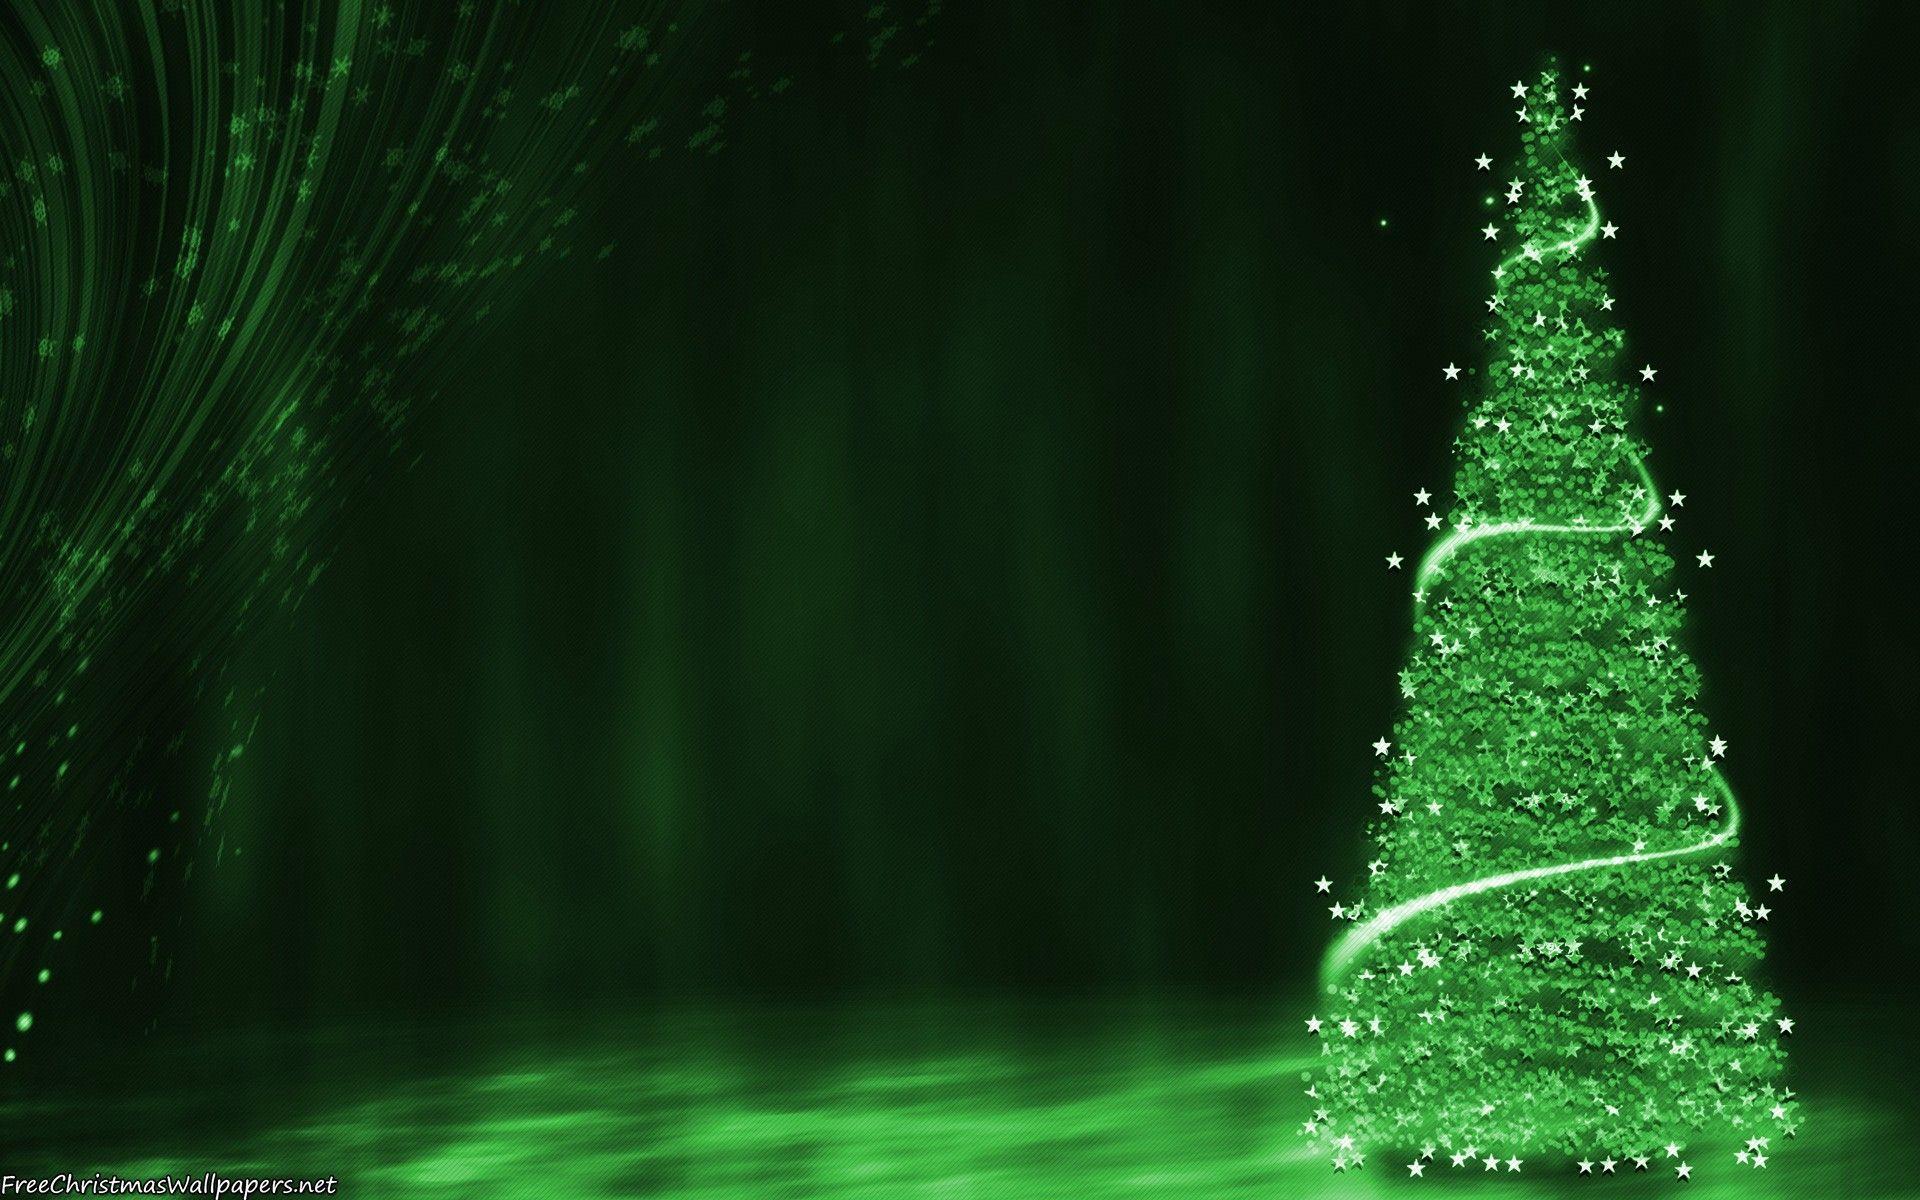 Hình nền Giáng sinh màu xanh lá cây đẹp (Beautiful green Christmas wallpapers): Mùa lễ hội sắp đến, hãy cùng tạo sự mới mẻ cho điện thoại của bạn với hình nền Giáng sinh màu xanh lá cây đẹp mắt và dễ thương. Chắc chắn bạn sẽ thích thú với các hoa văn trang trí tinh tế trên hình nền độc đáo này.